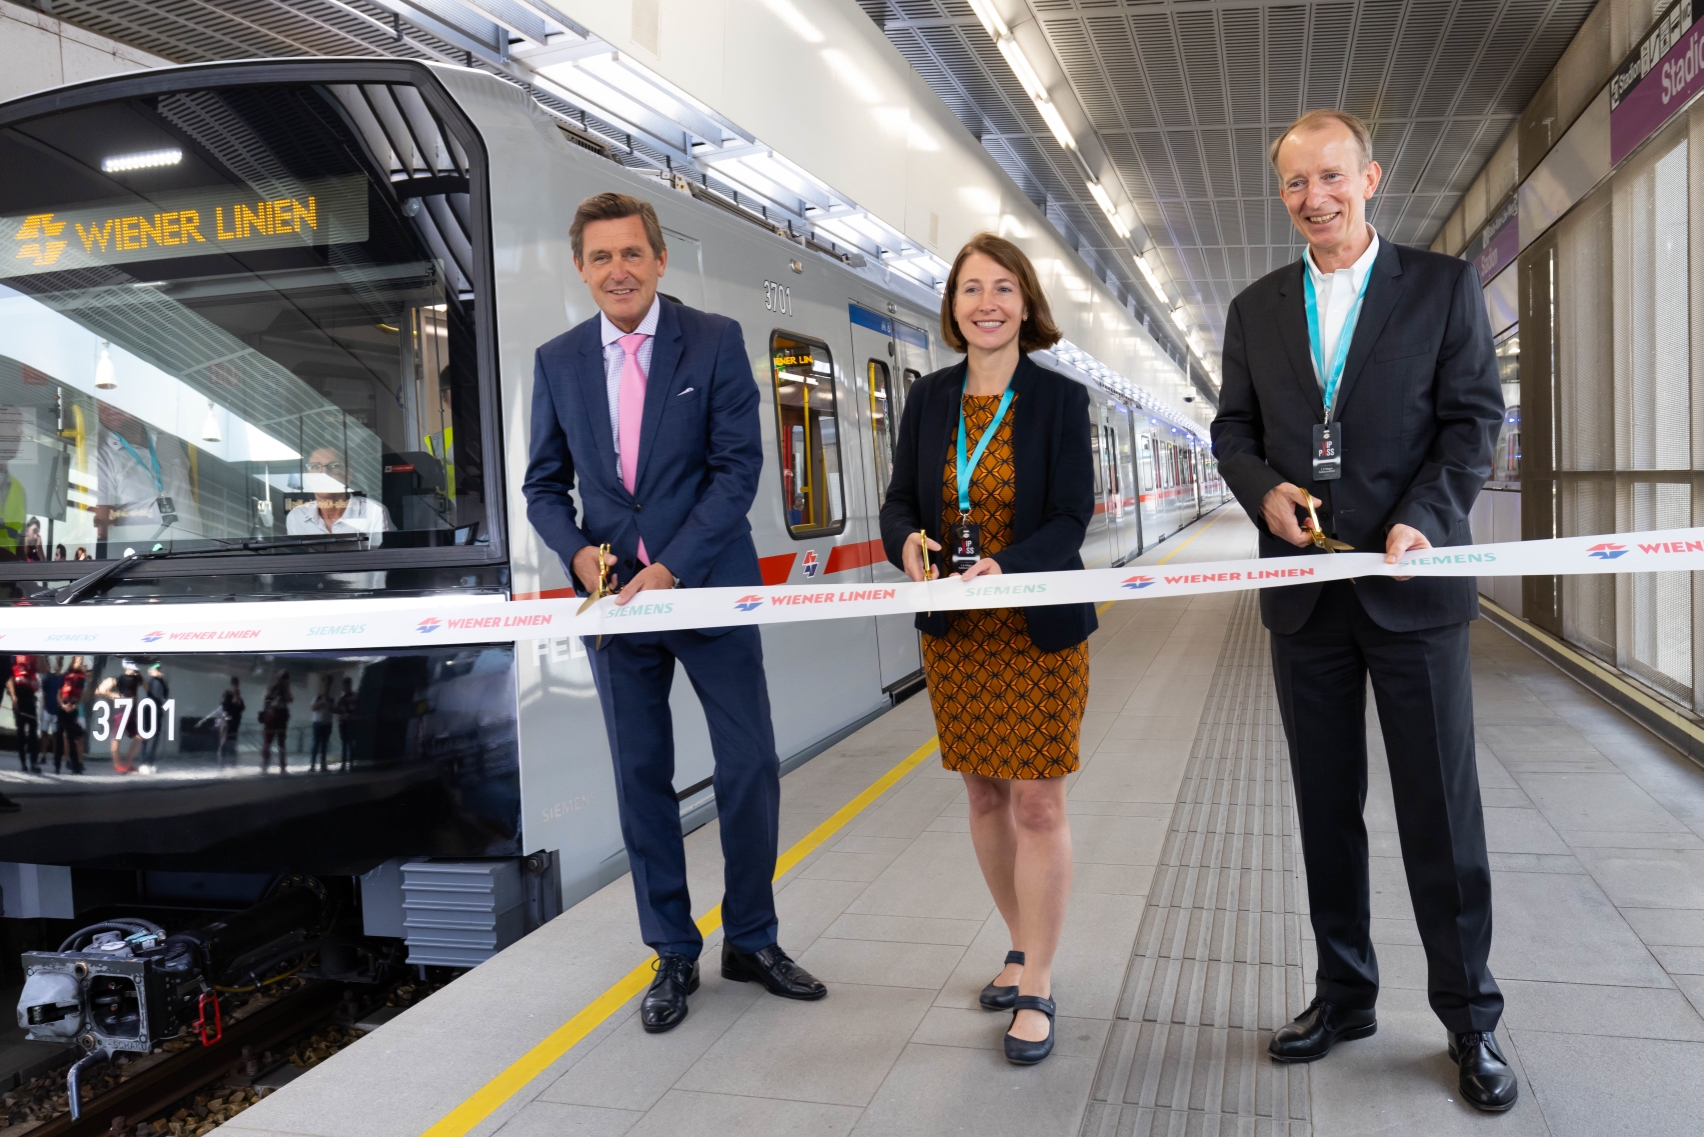 Stadtrat Peter Hanke, technische Geschäftsführerin der Wiener Linien Gudrun Senk und Leiter für Schienenfahrzeuge Siemens Mobility Albrecht Neumann